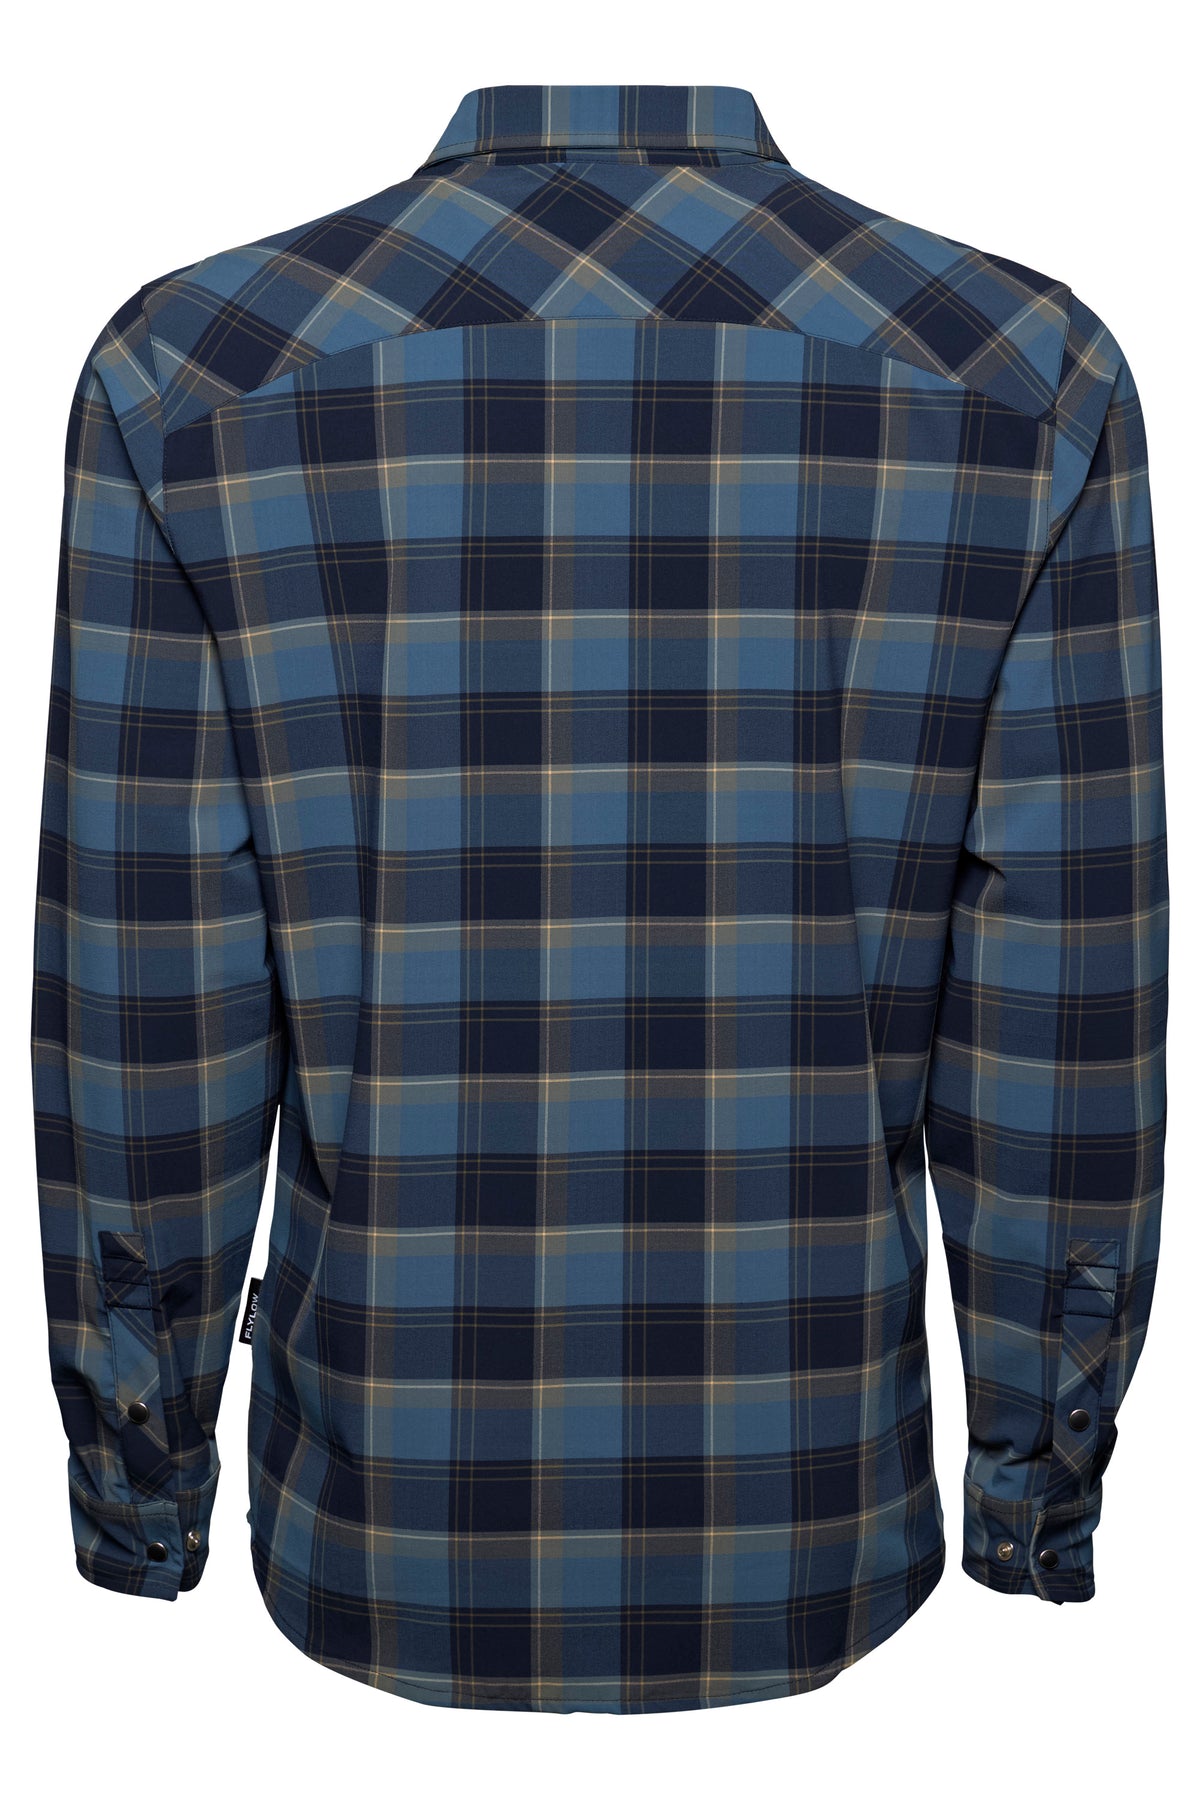 Royal Shirt - Men's Lightweight Flannel Shirt